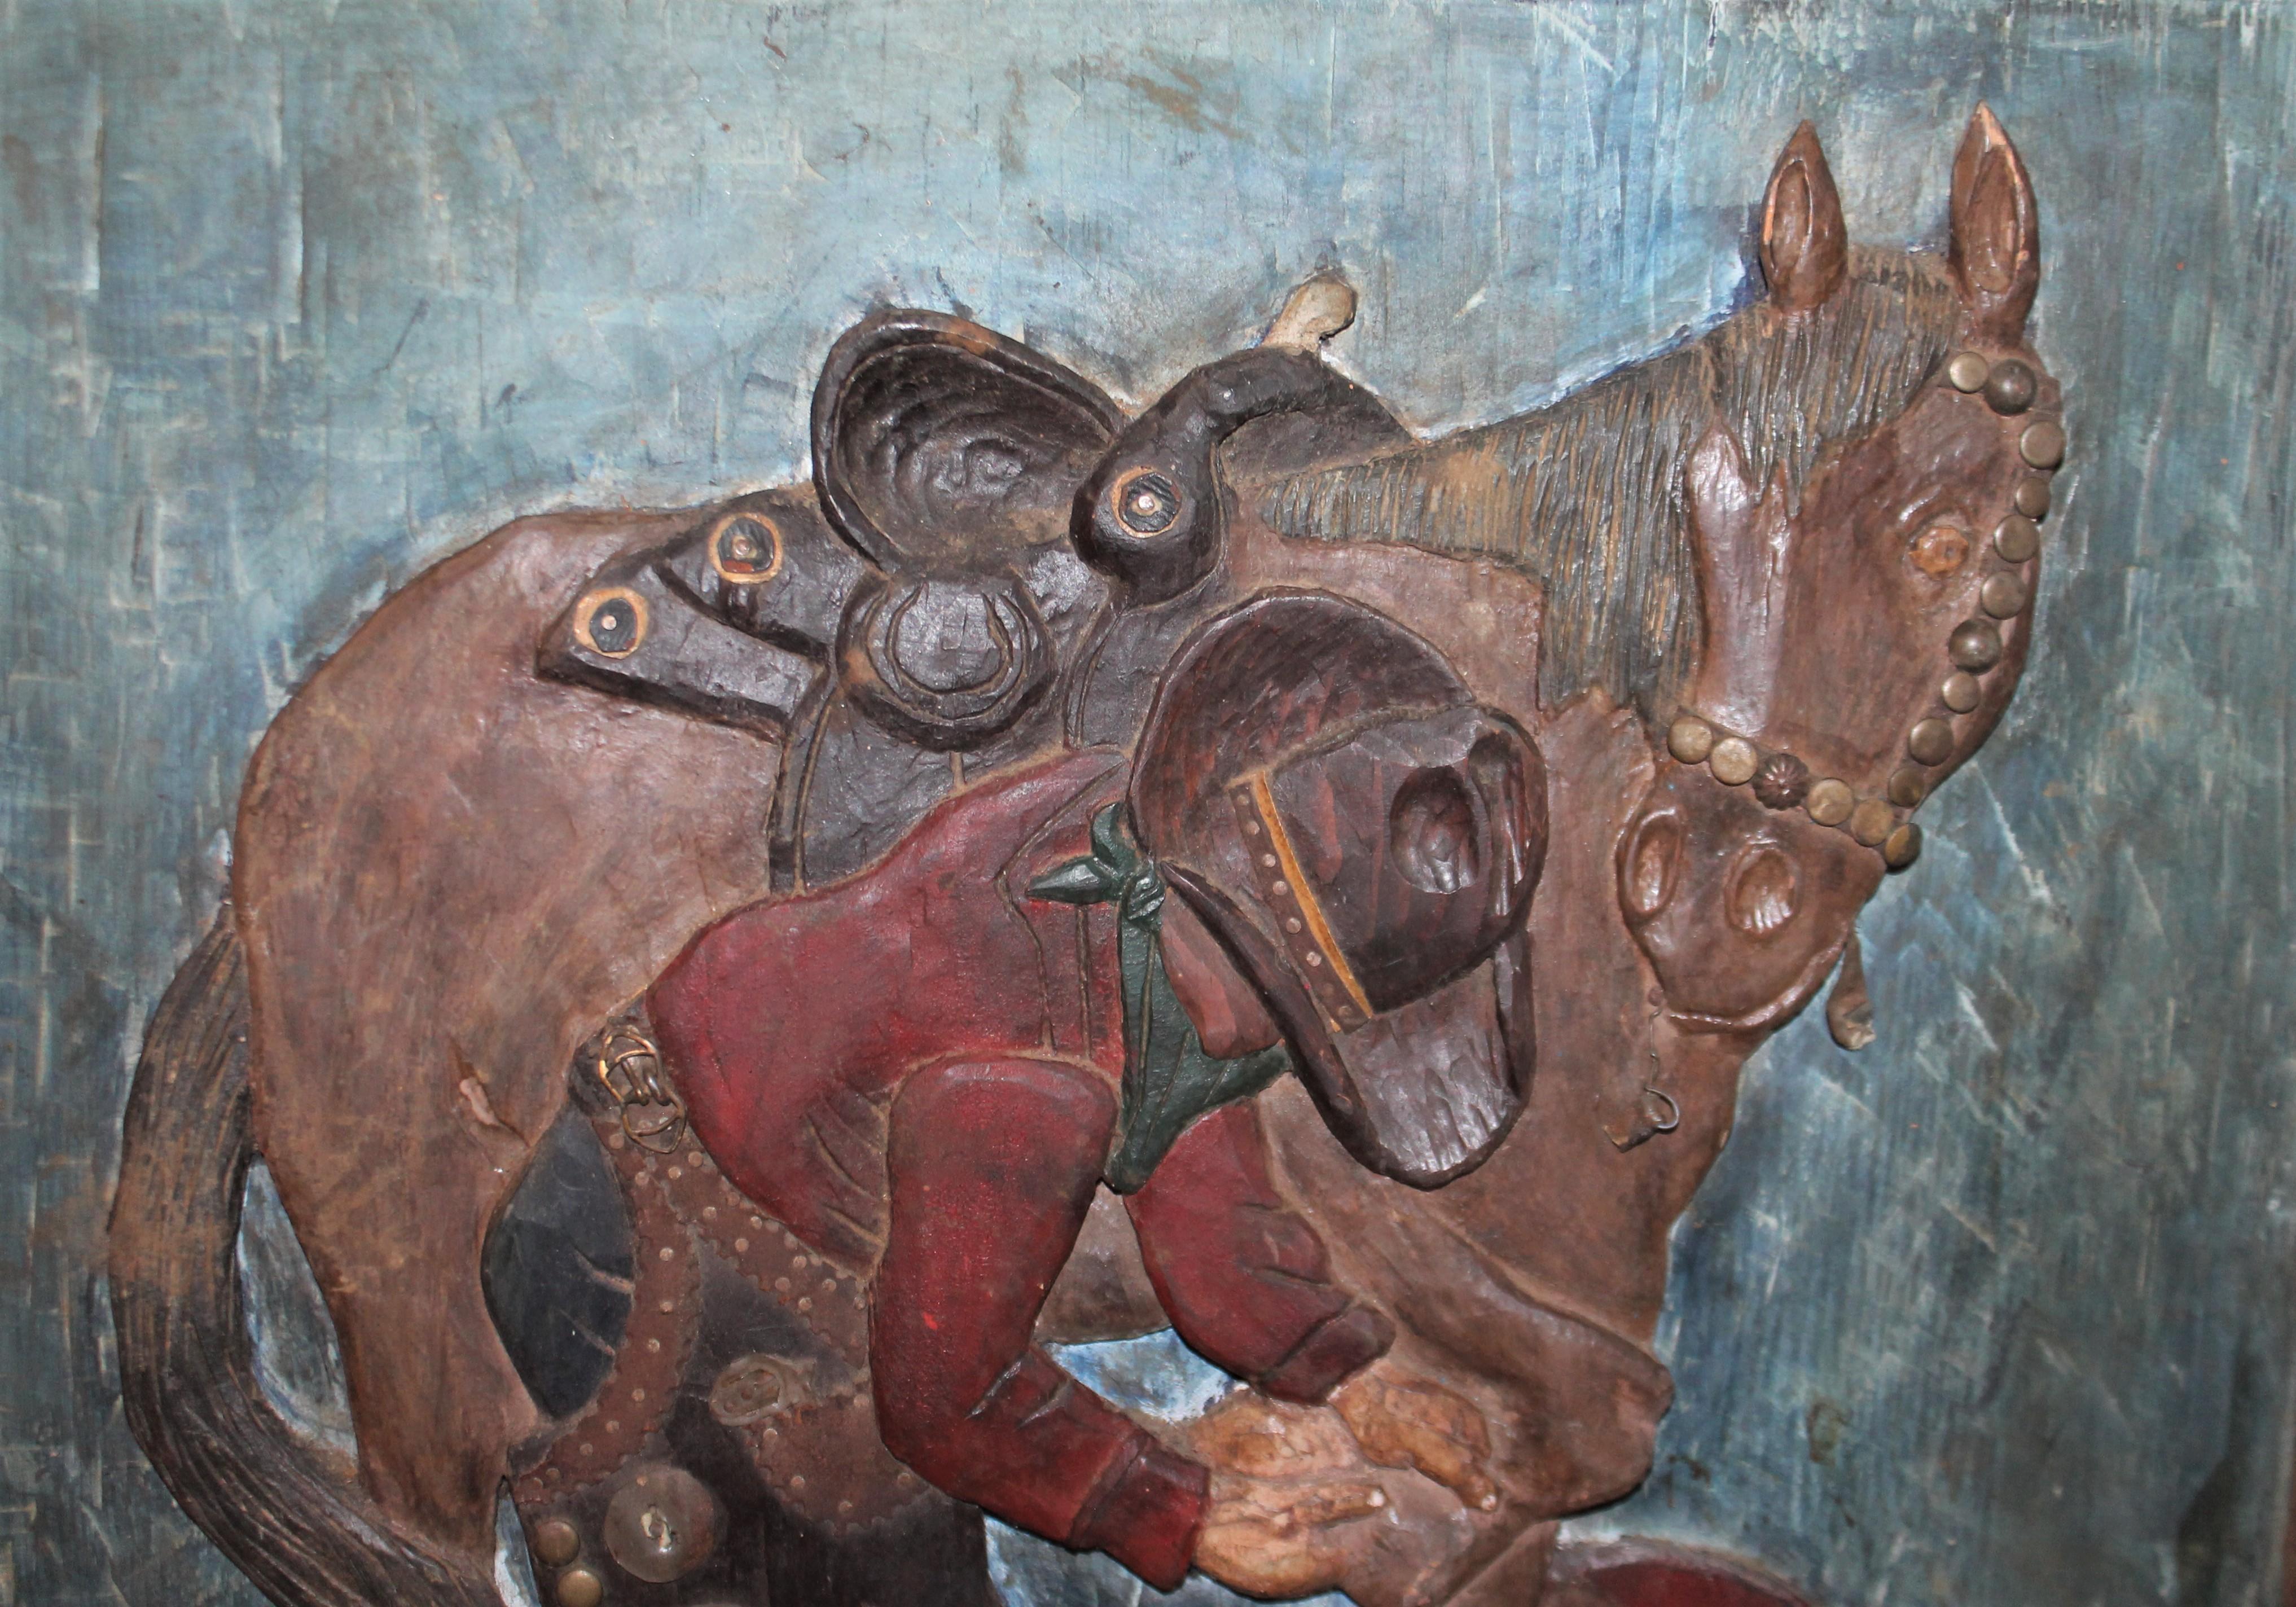 Cette sculpture en relief d'art populaire, sculptée et peinte à la main, représente un cow-boy avec son cheval. Il est entièrement peint d'origine et son cadre original est sculpté et peint à la main. Cette sculpture folklorique peinte a une surface